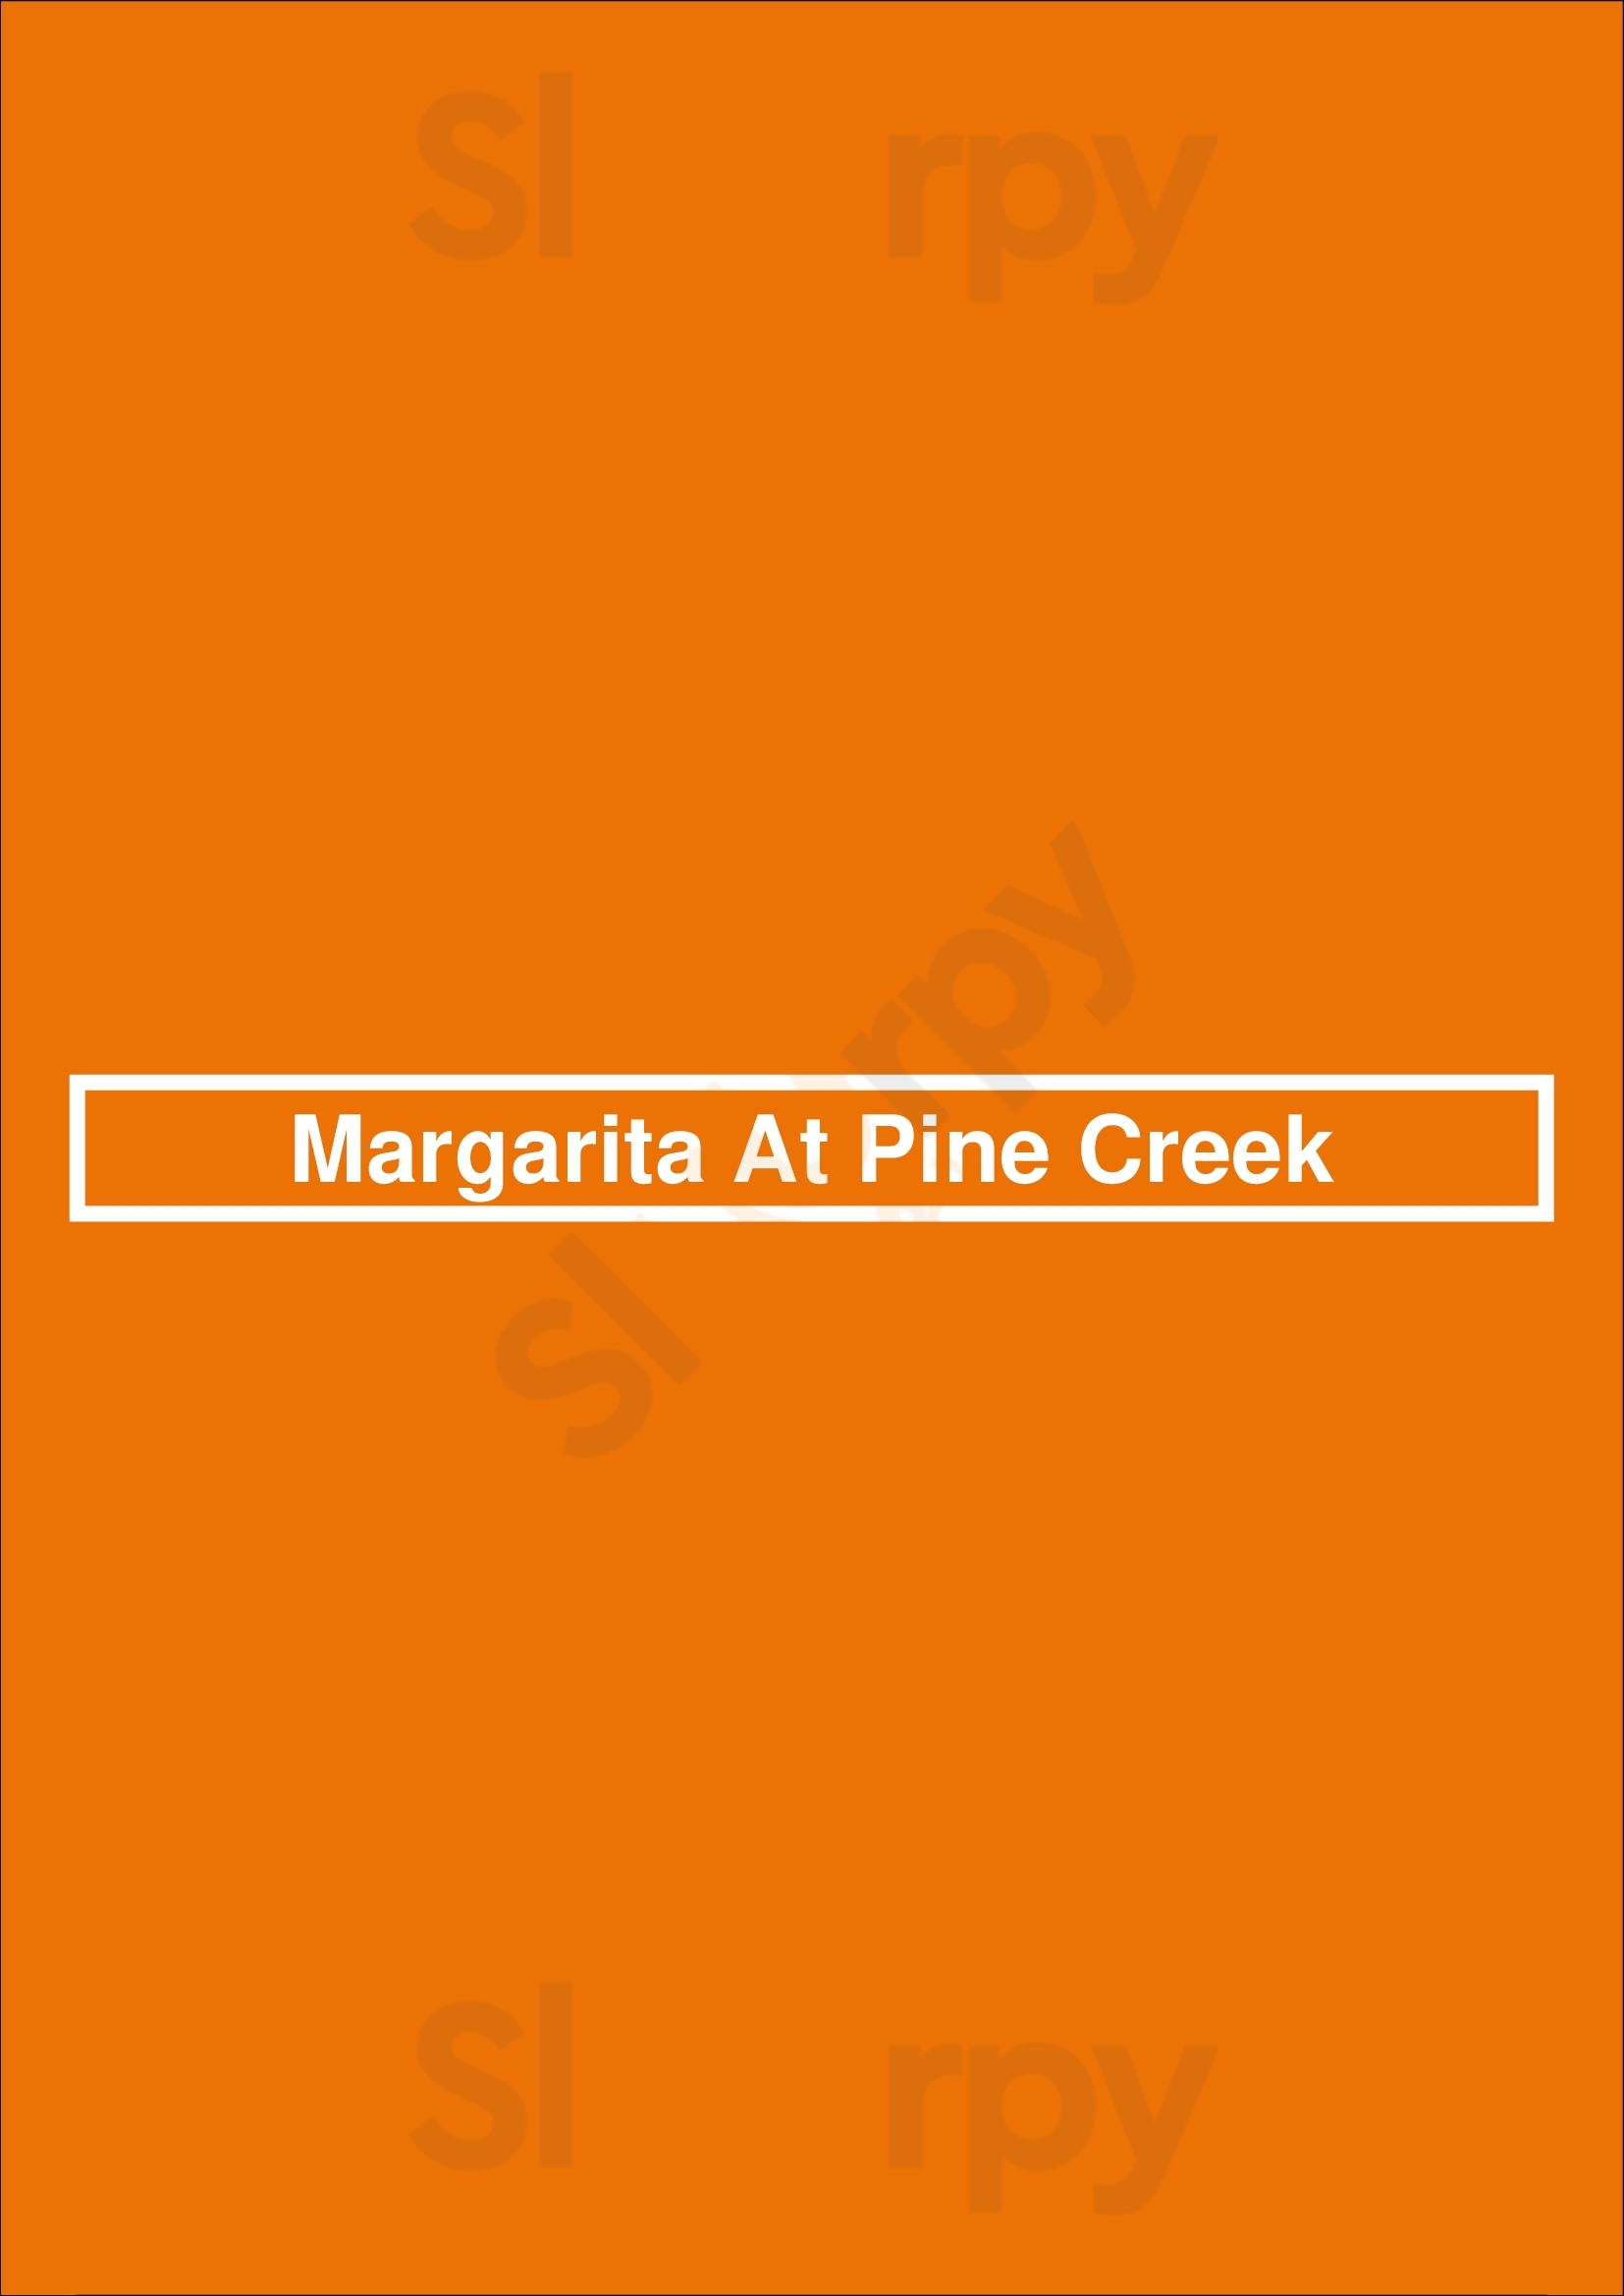 Margarita At Pine Creek Colorado Springs Menu - 1